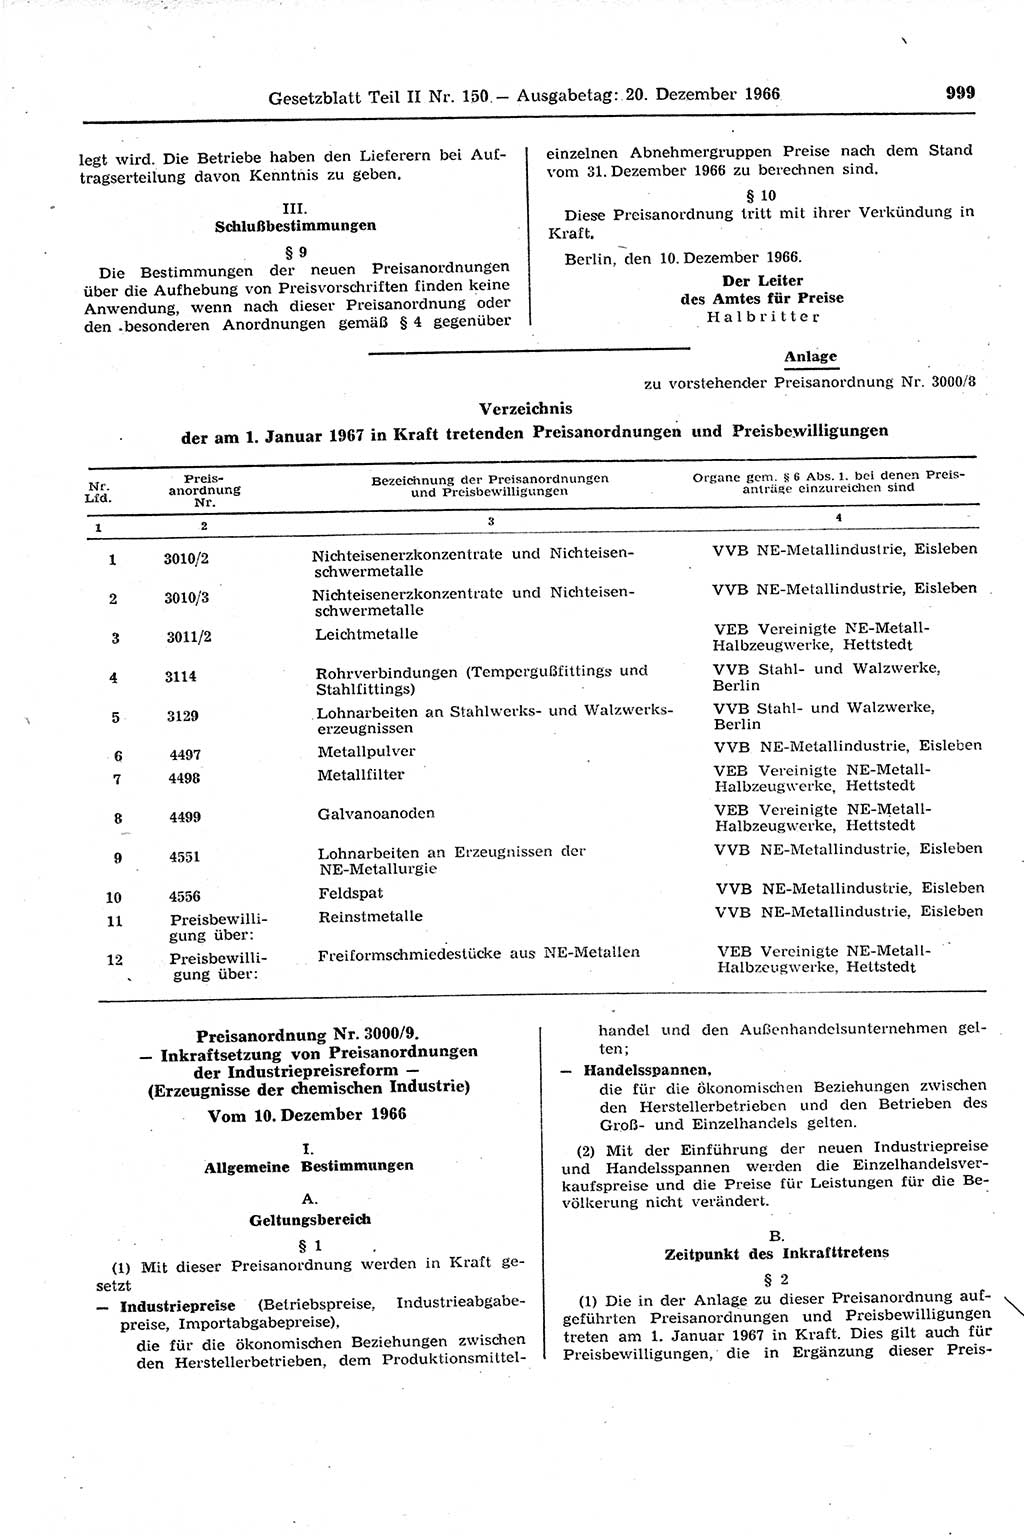 Gesetzblatt (GBl.) der Deutschen Demokratischen Republik (DDR) Teil ⅠⅠ 1966, Seite 999 (GBl. DDR ⅠⅠ 1966, S. 999)